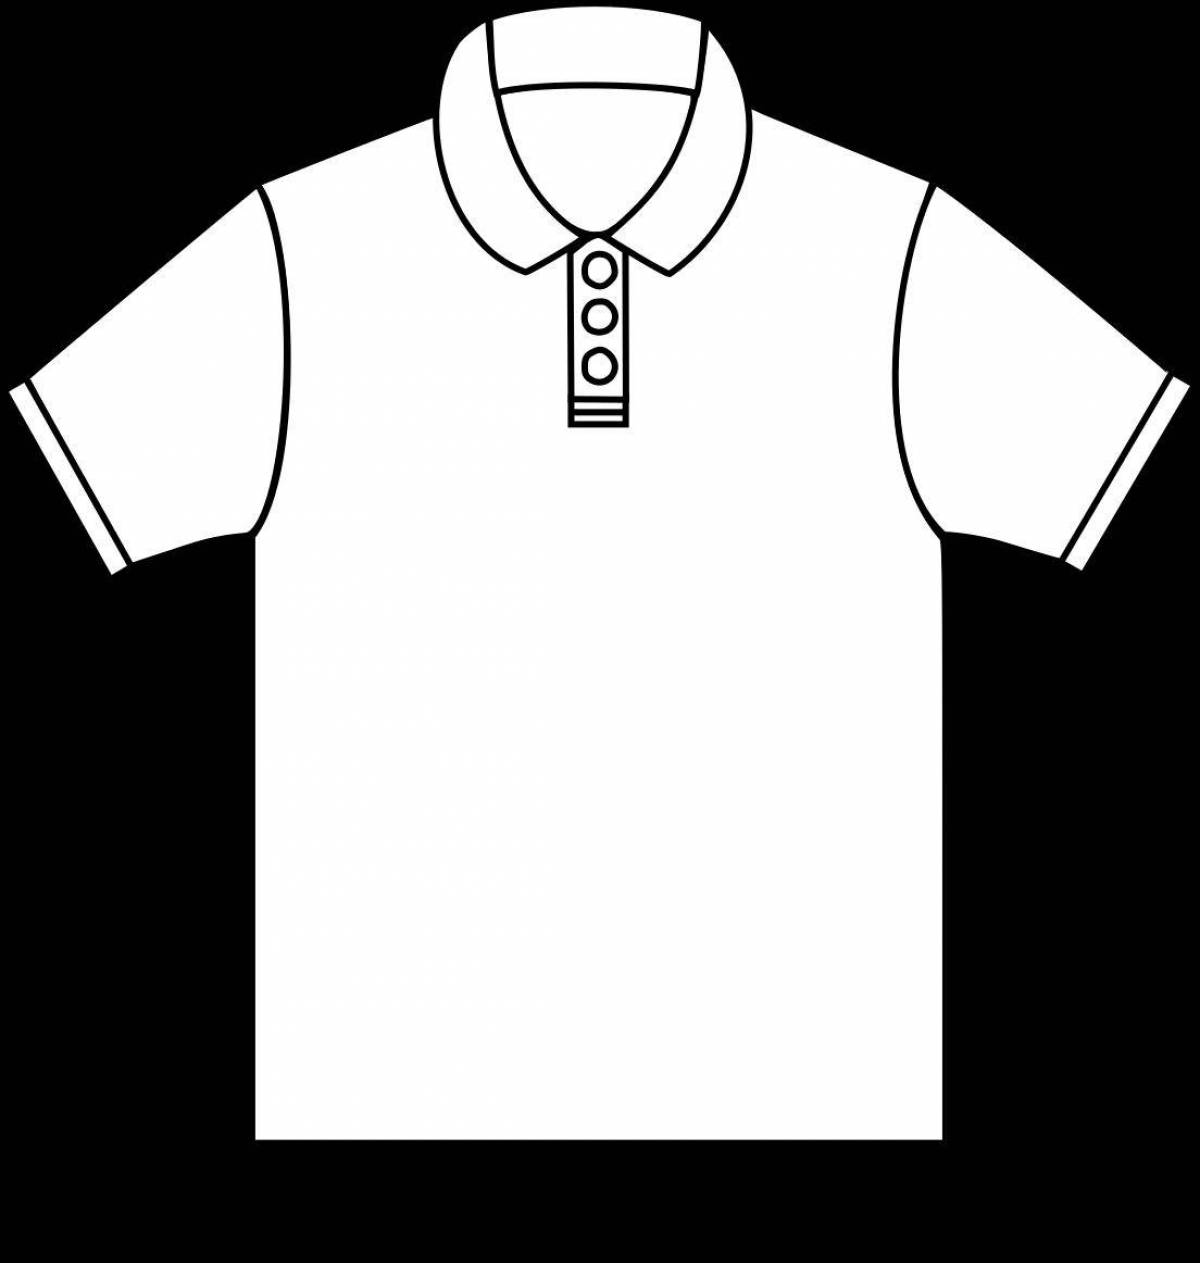 Раскраска с изображением футболки для мальчика